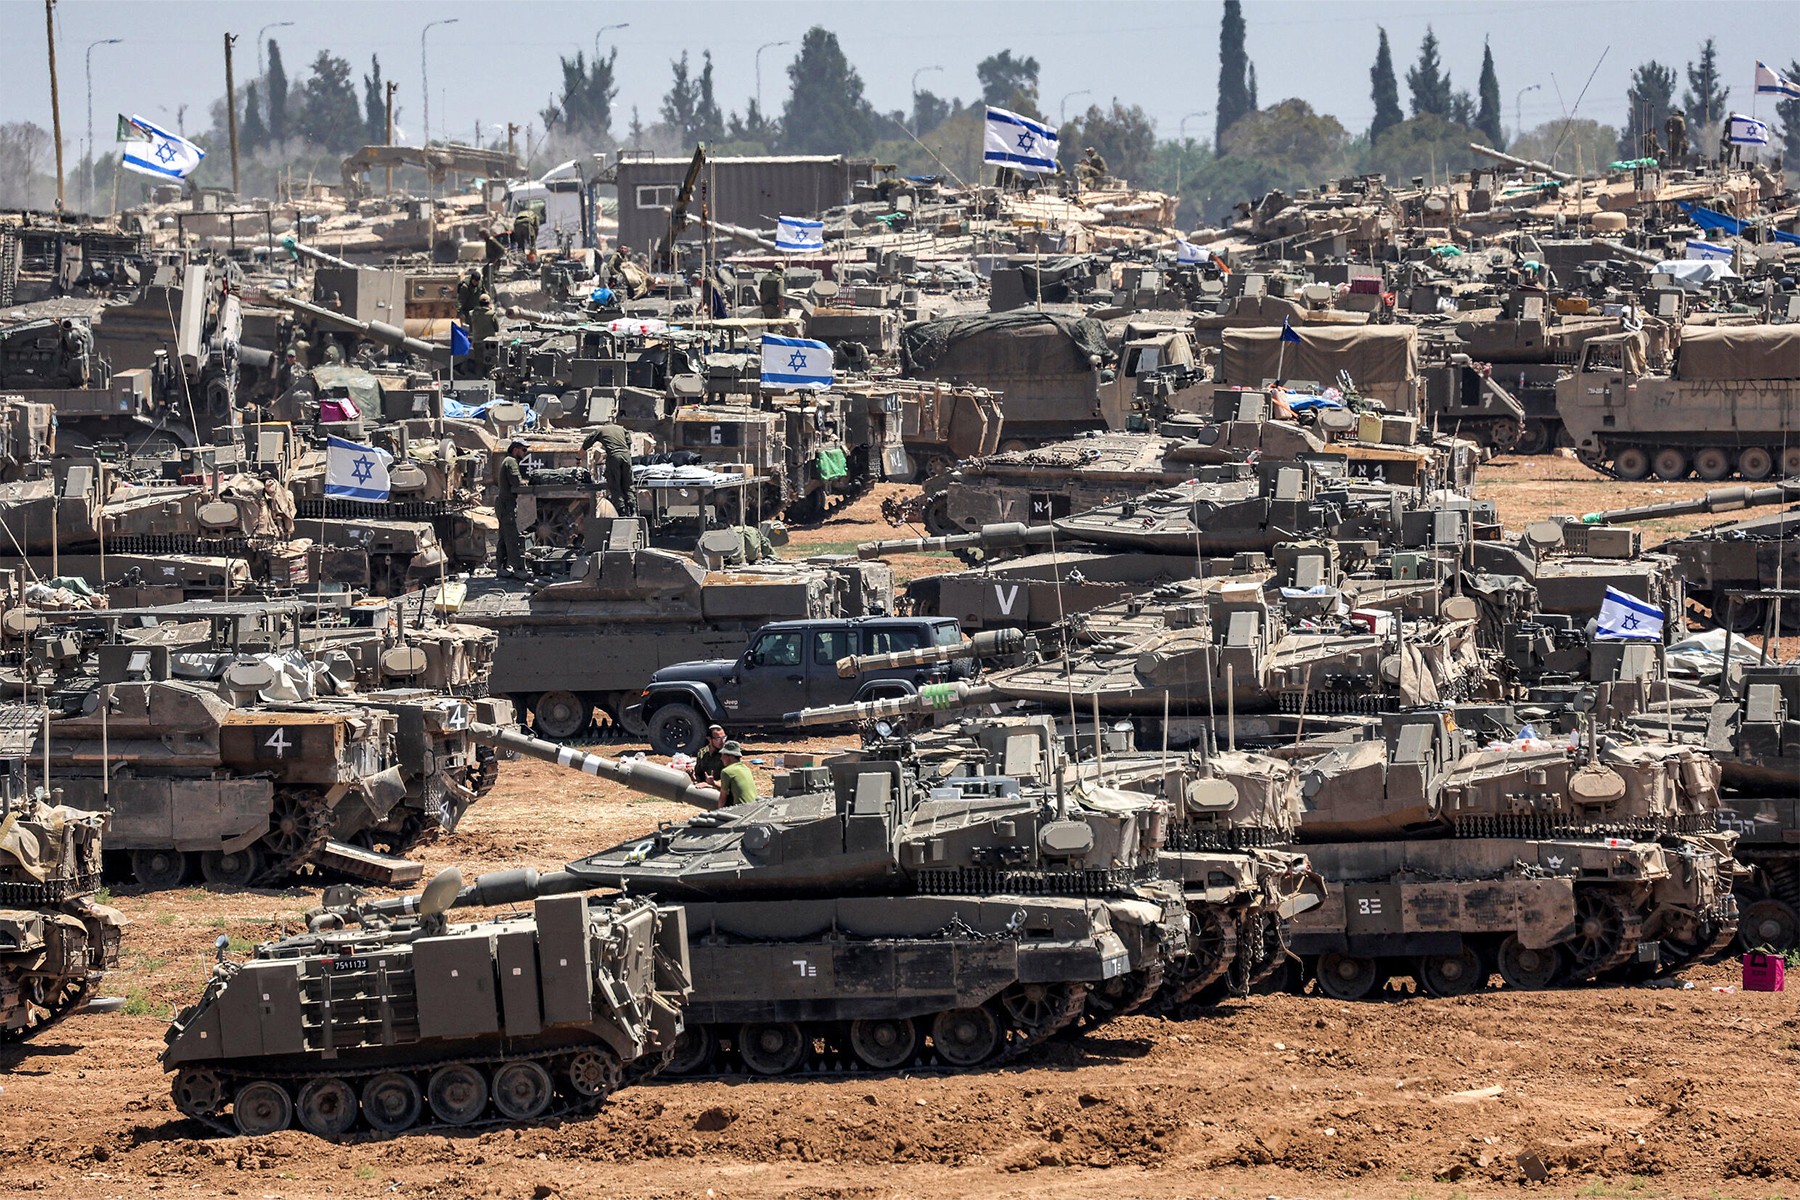 تانک های اسرائیلی برای اولین بار در جنگ غزه وارد مرکز رفح شدند